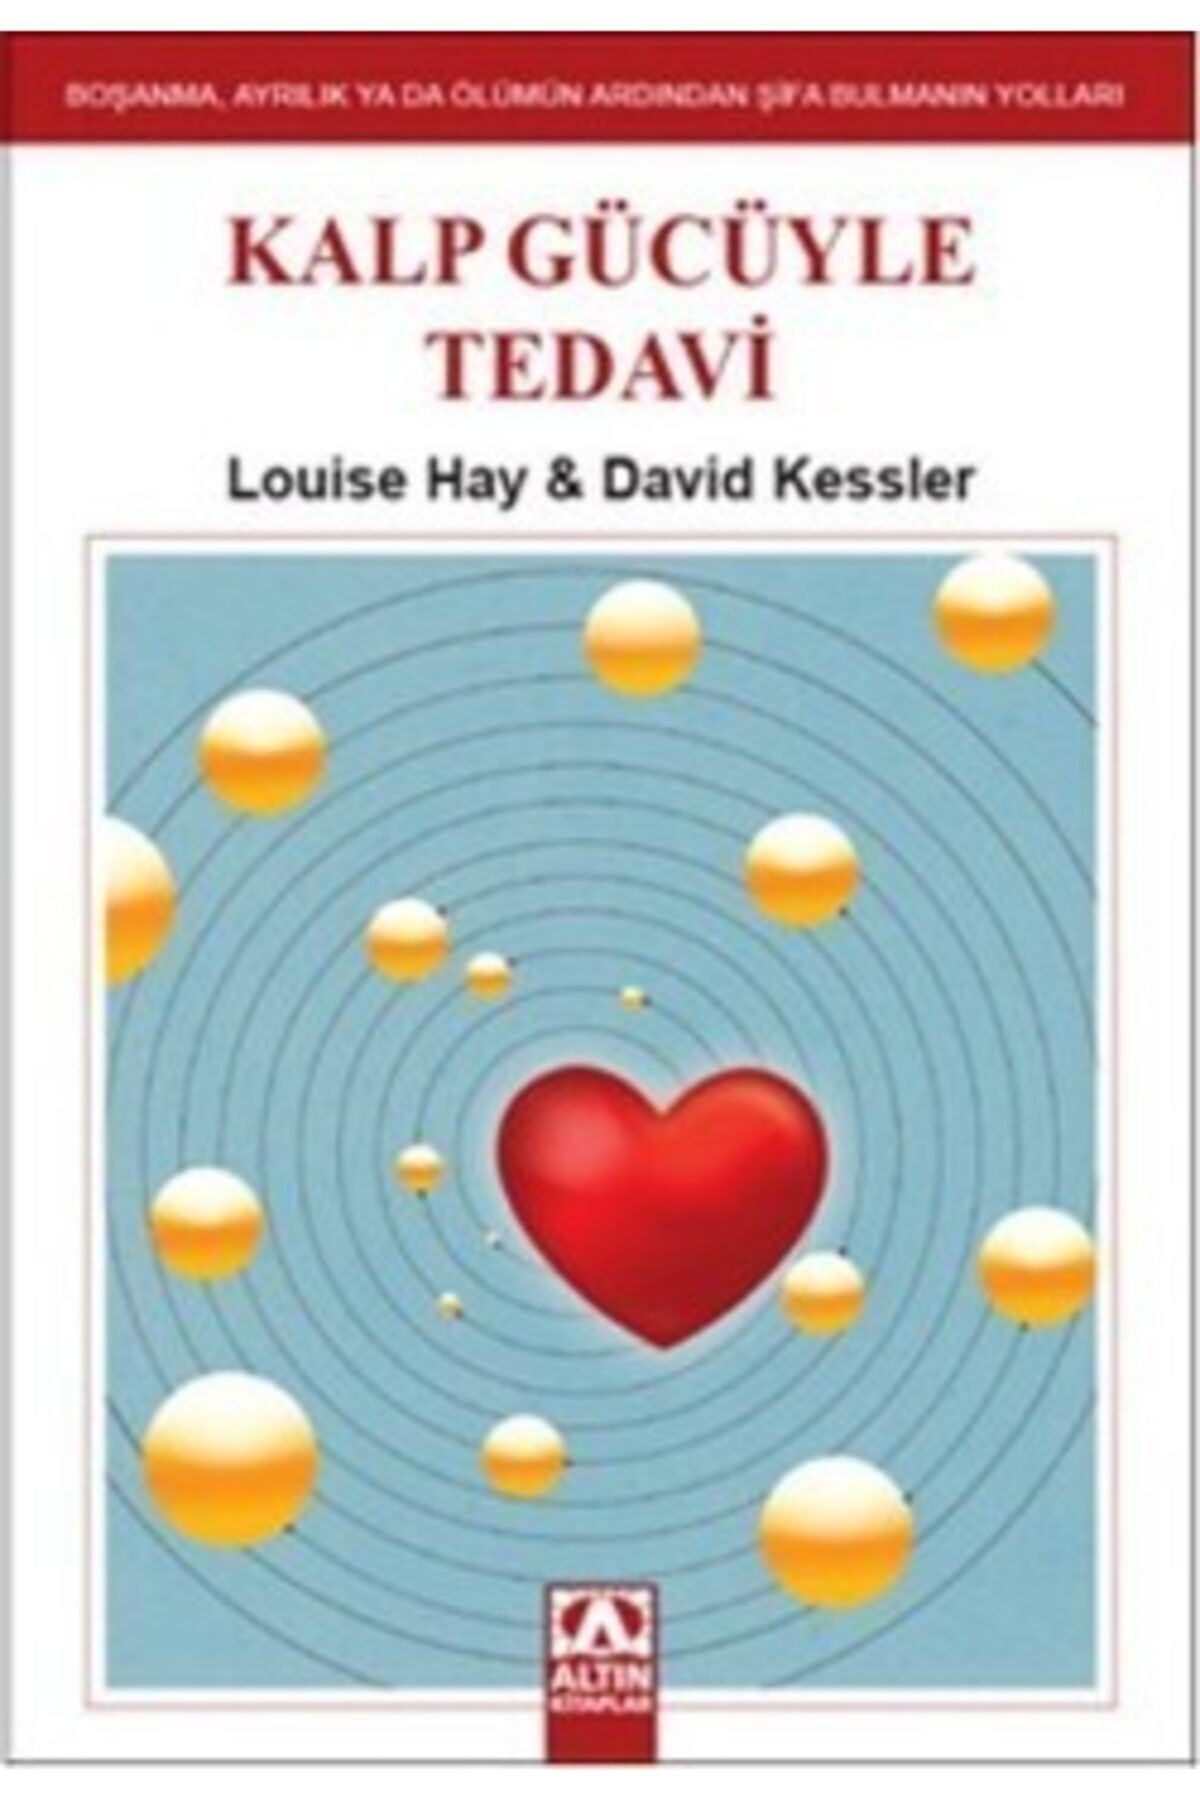 Altın Kitaplar Kalp Gücüyle Tedavi David Kessler